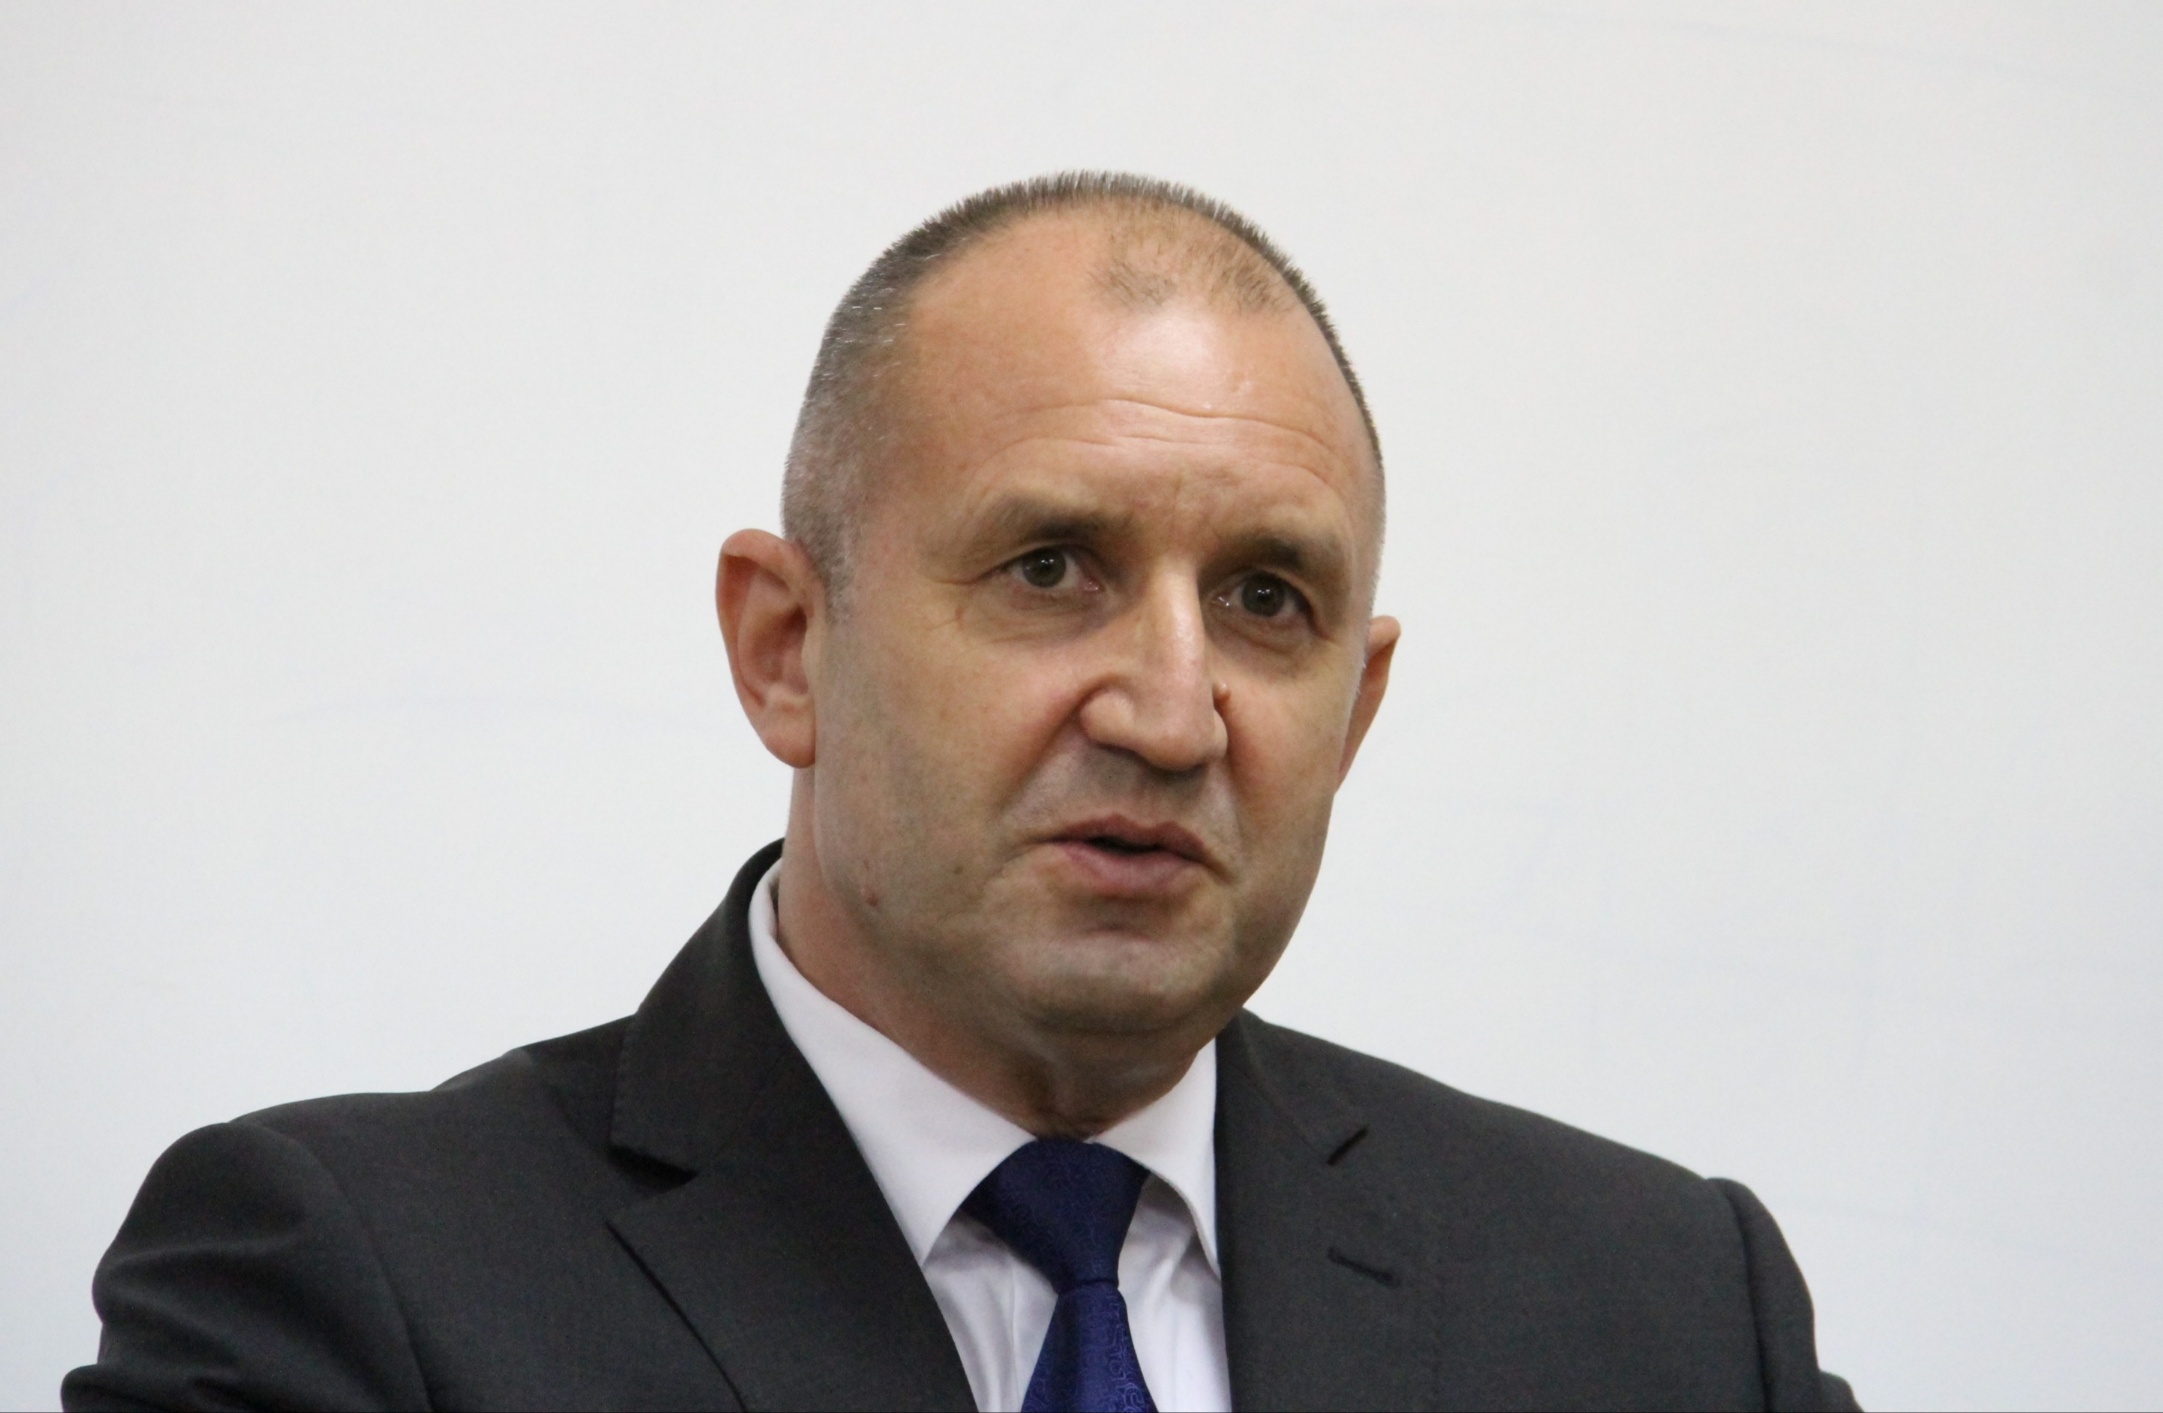 Държавният глава Румен Радев ще представлява България на заседанието на